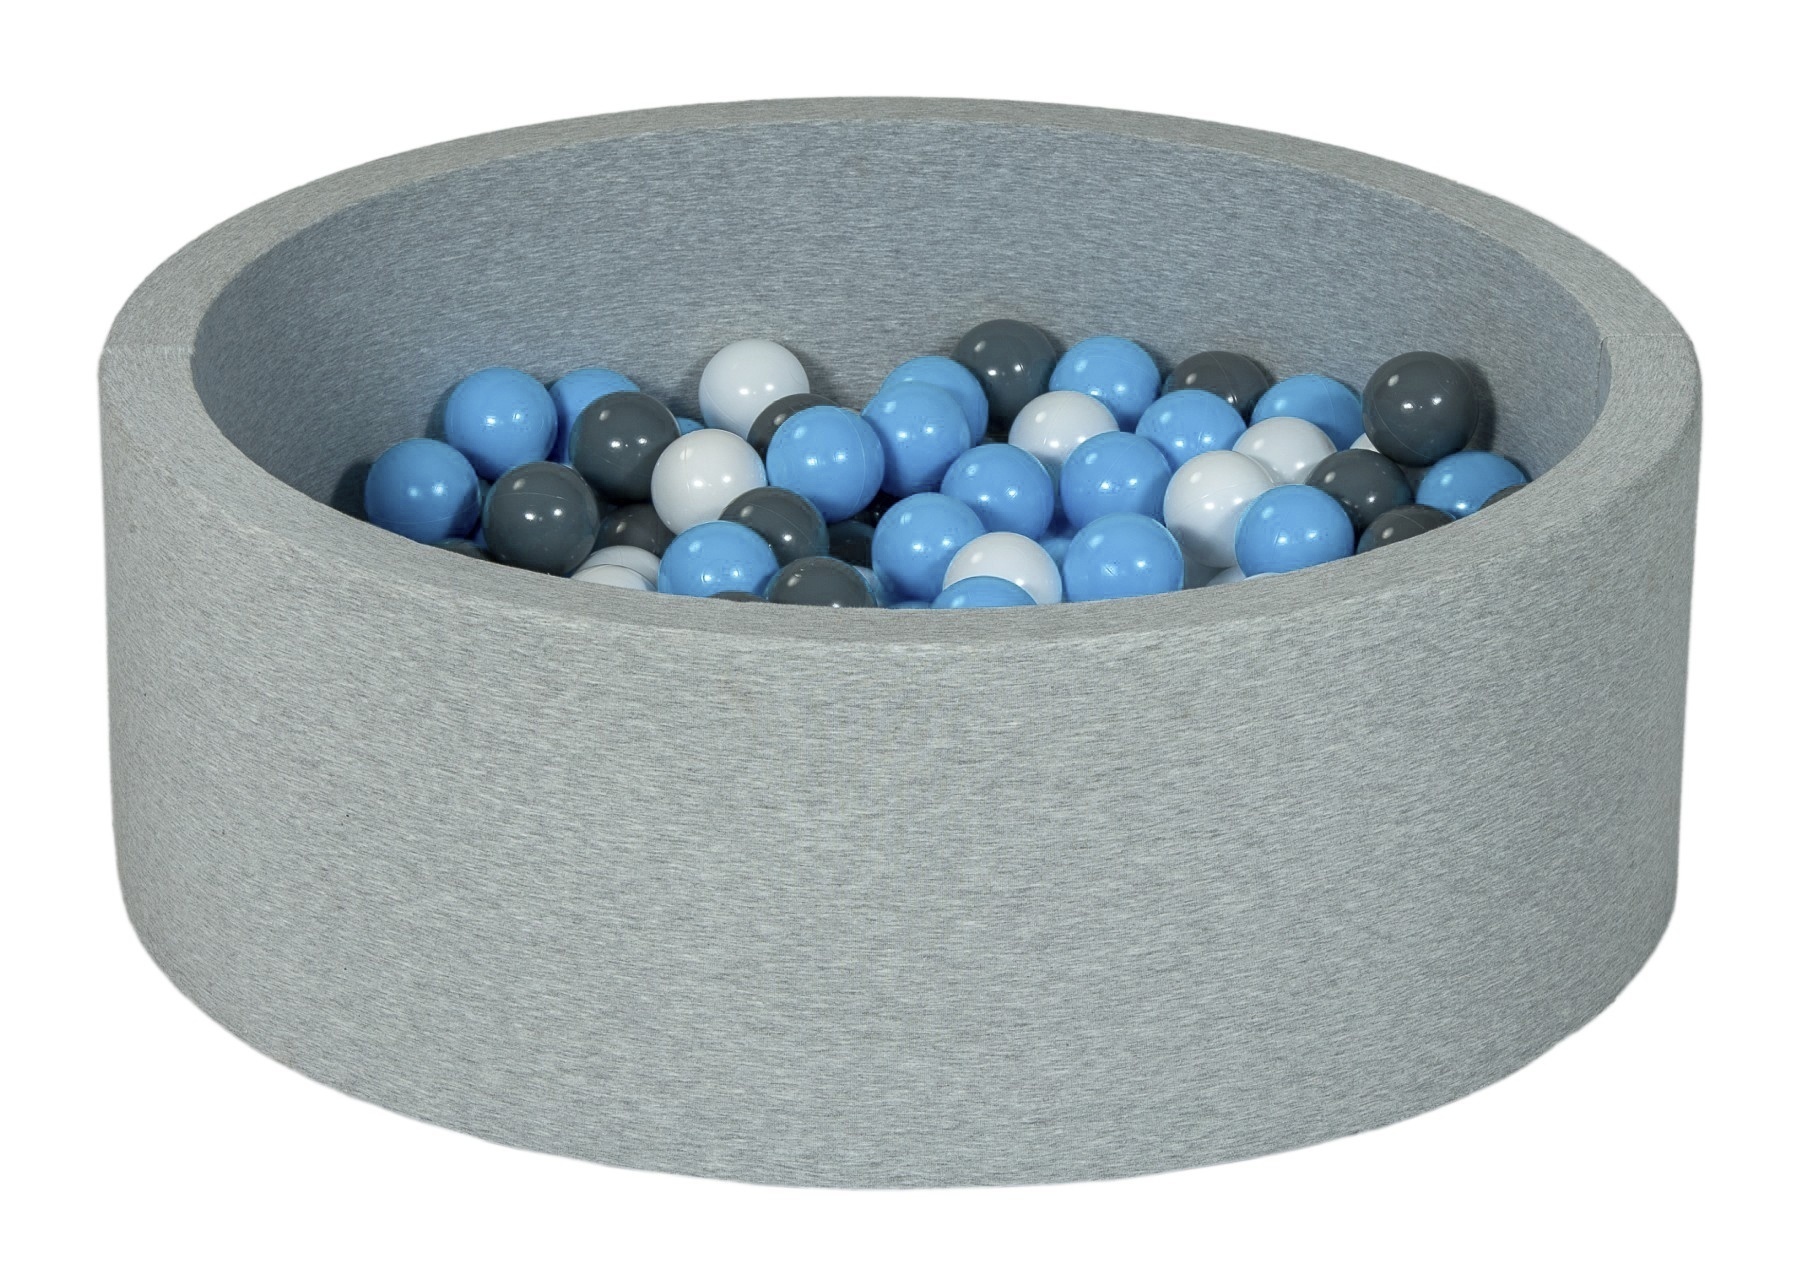 Viking Choice Ballenbad rond - grijs - 90x30 cm - met 150 blauw, grijs en witte ballen